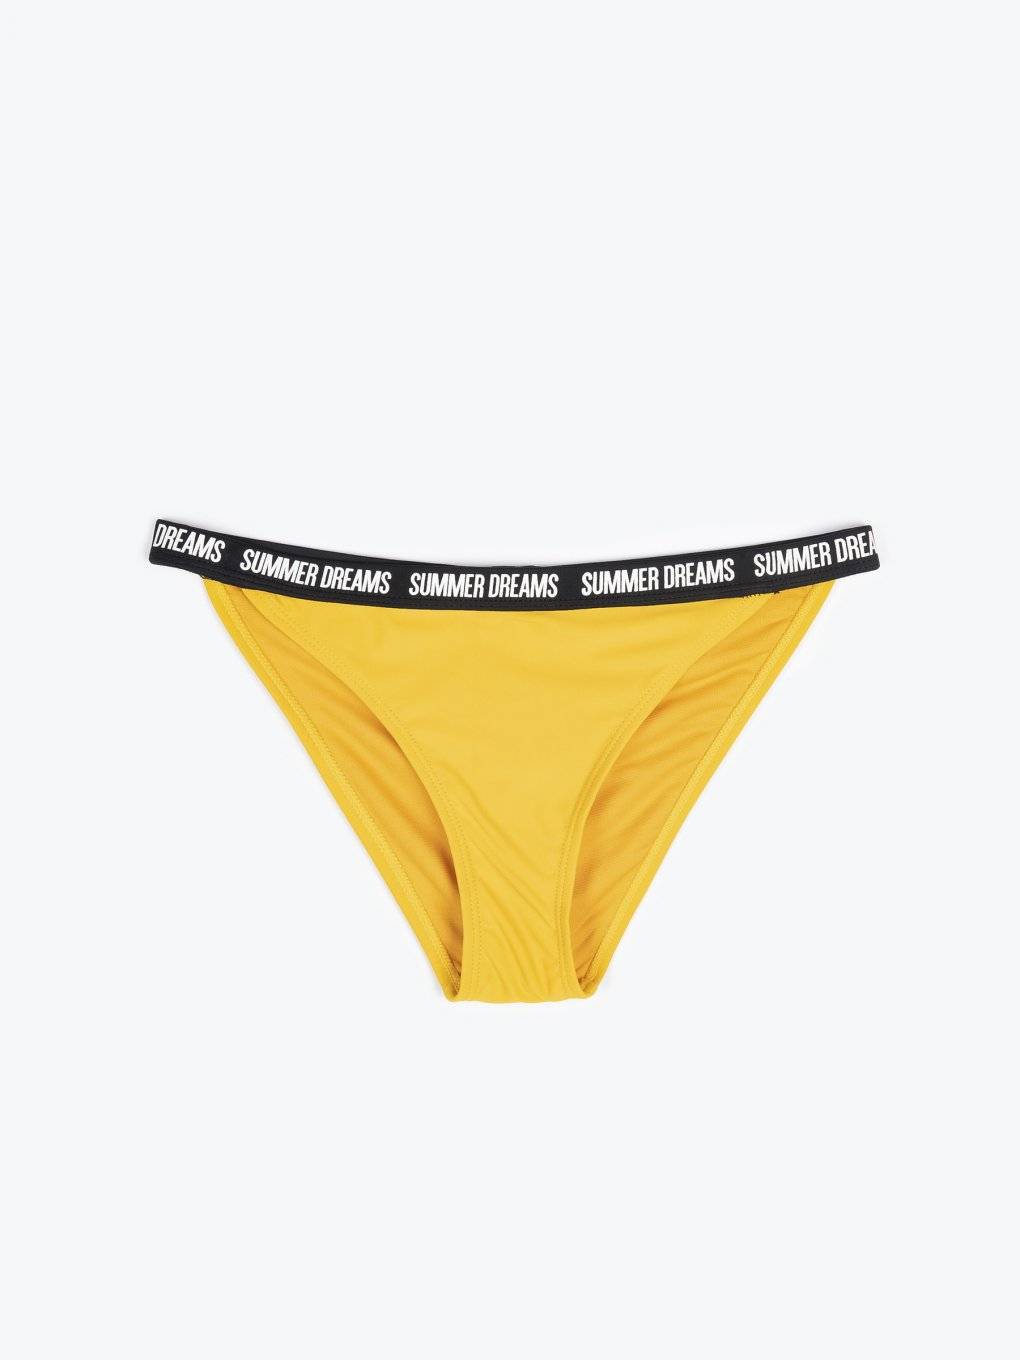 Bikini bottom with slogan print